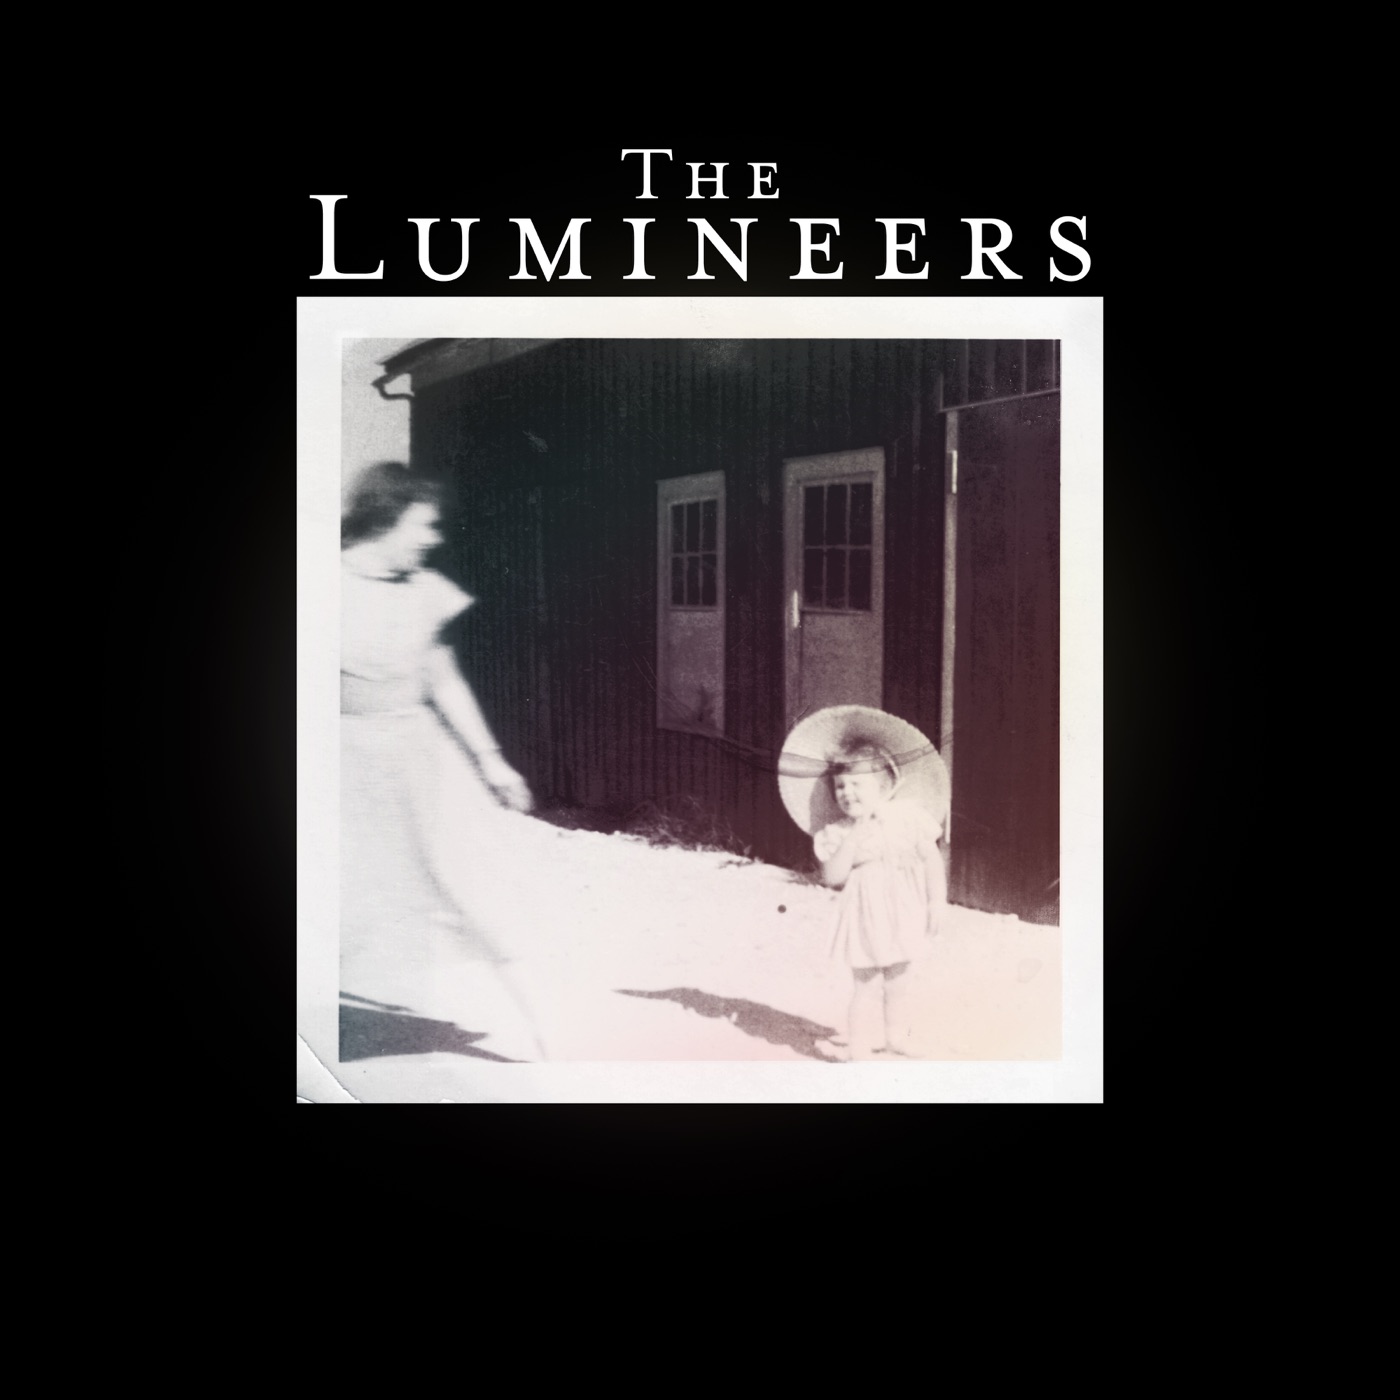 The Lumineers by The Lumineers